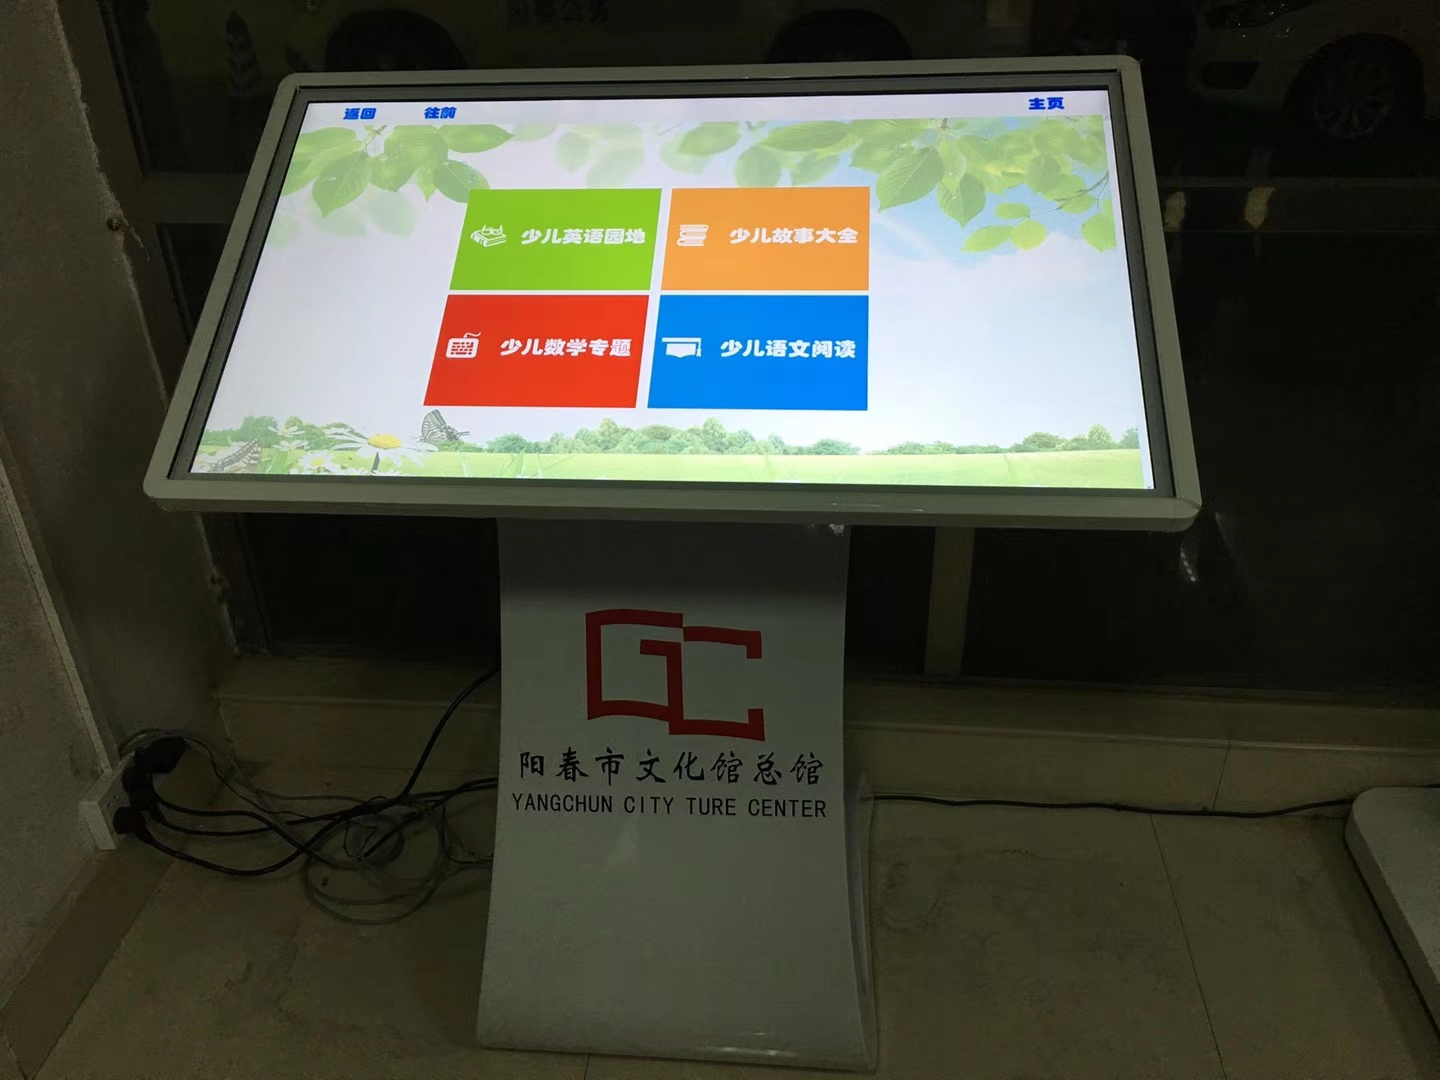 广东省各市县图书馆遍布图赞科技触摸一体机(图3)